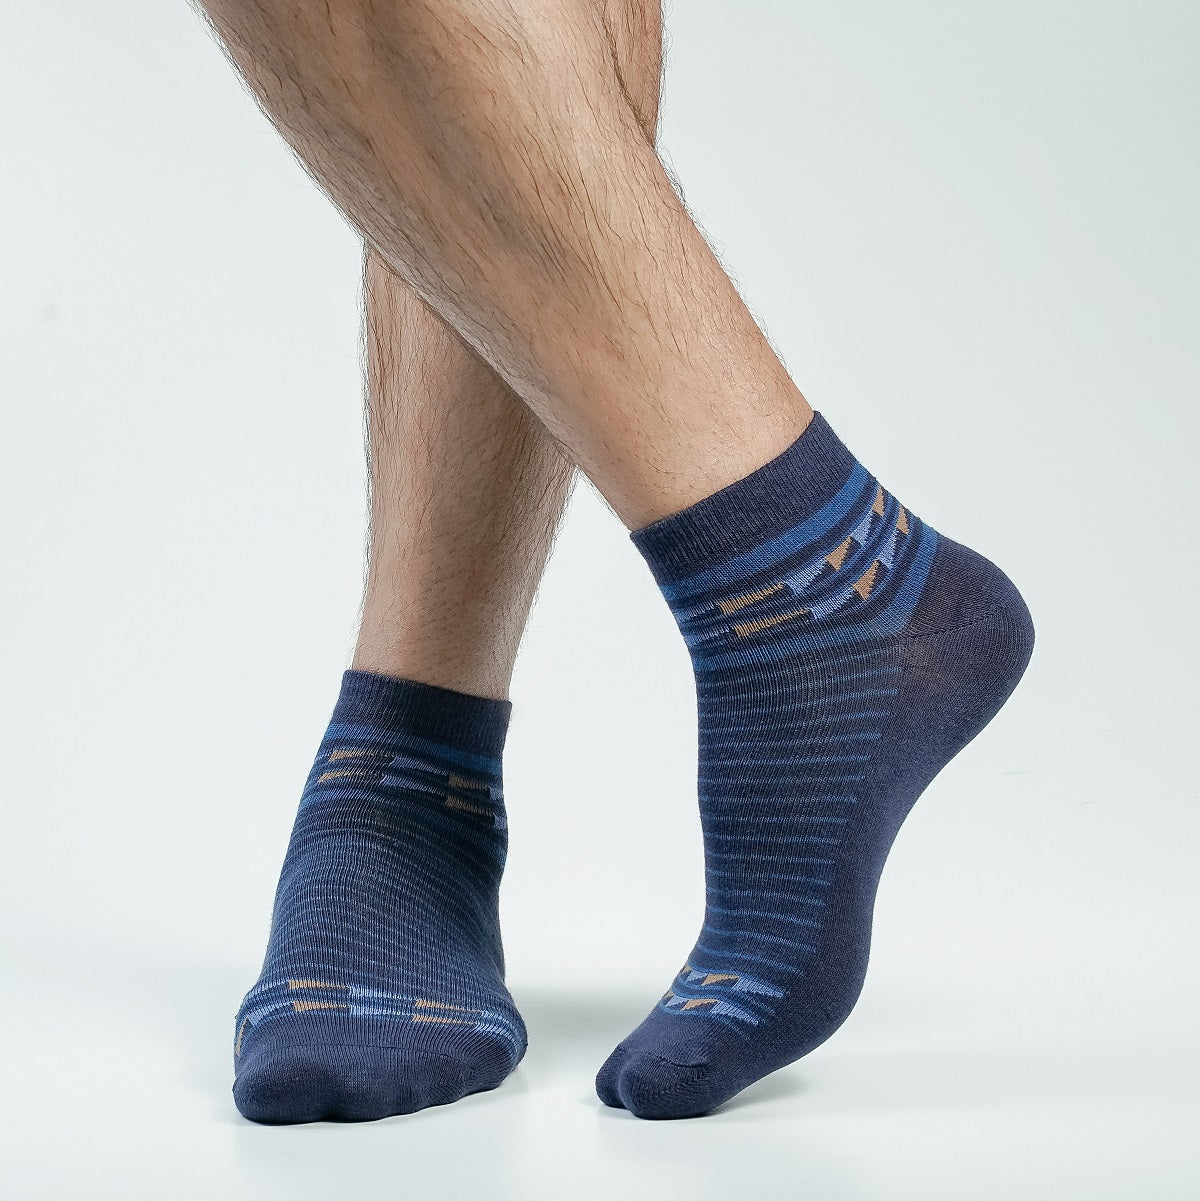 Action Ankle Socks For Men